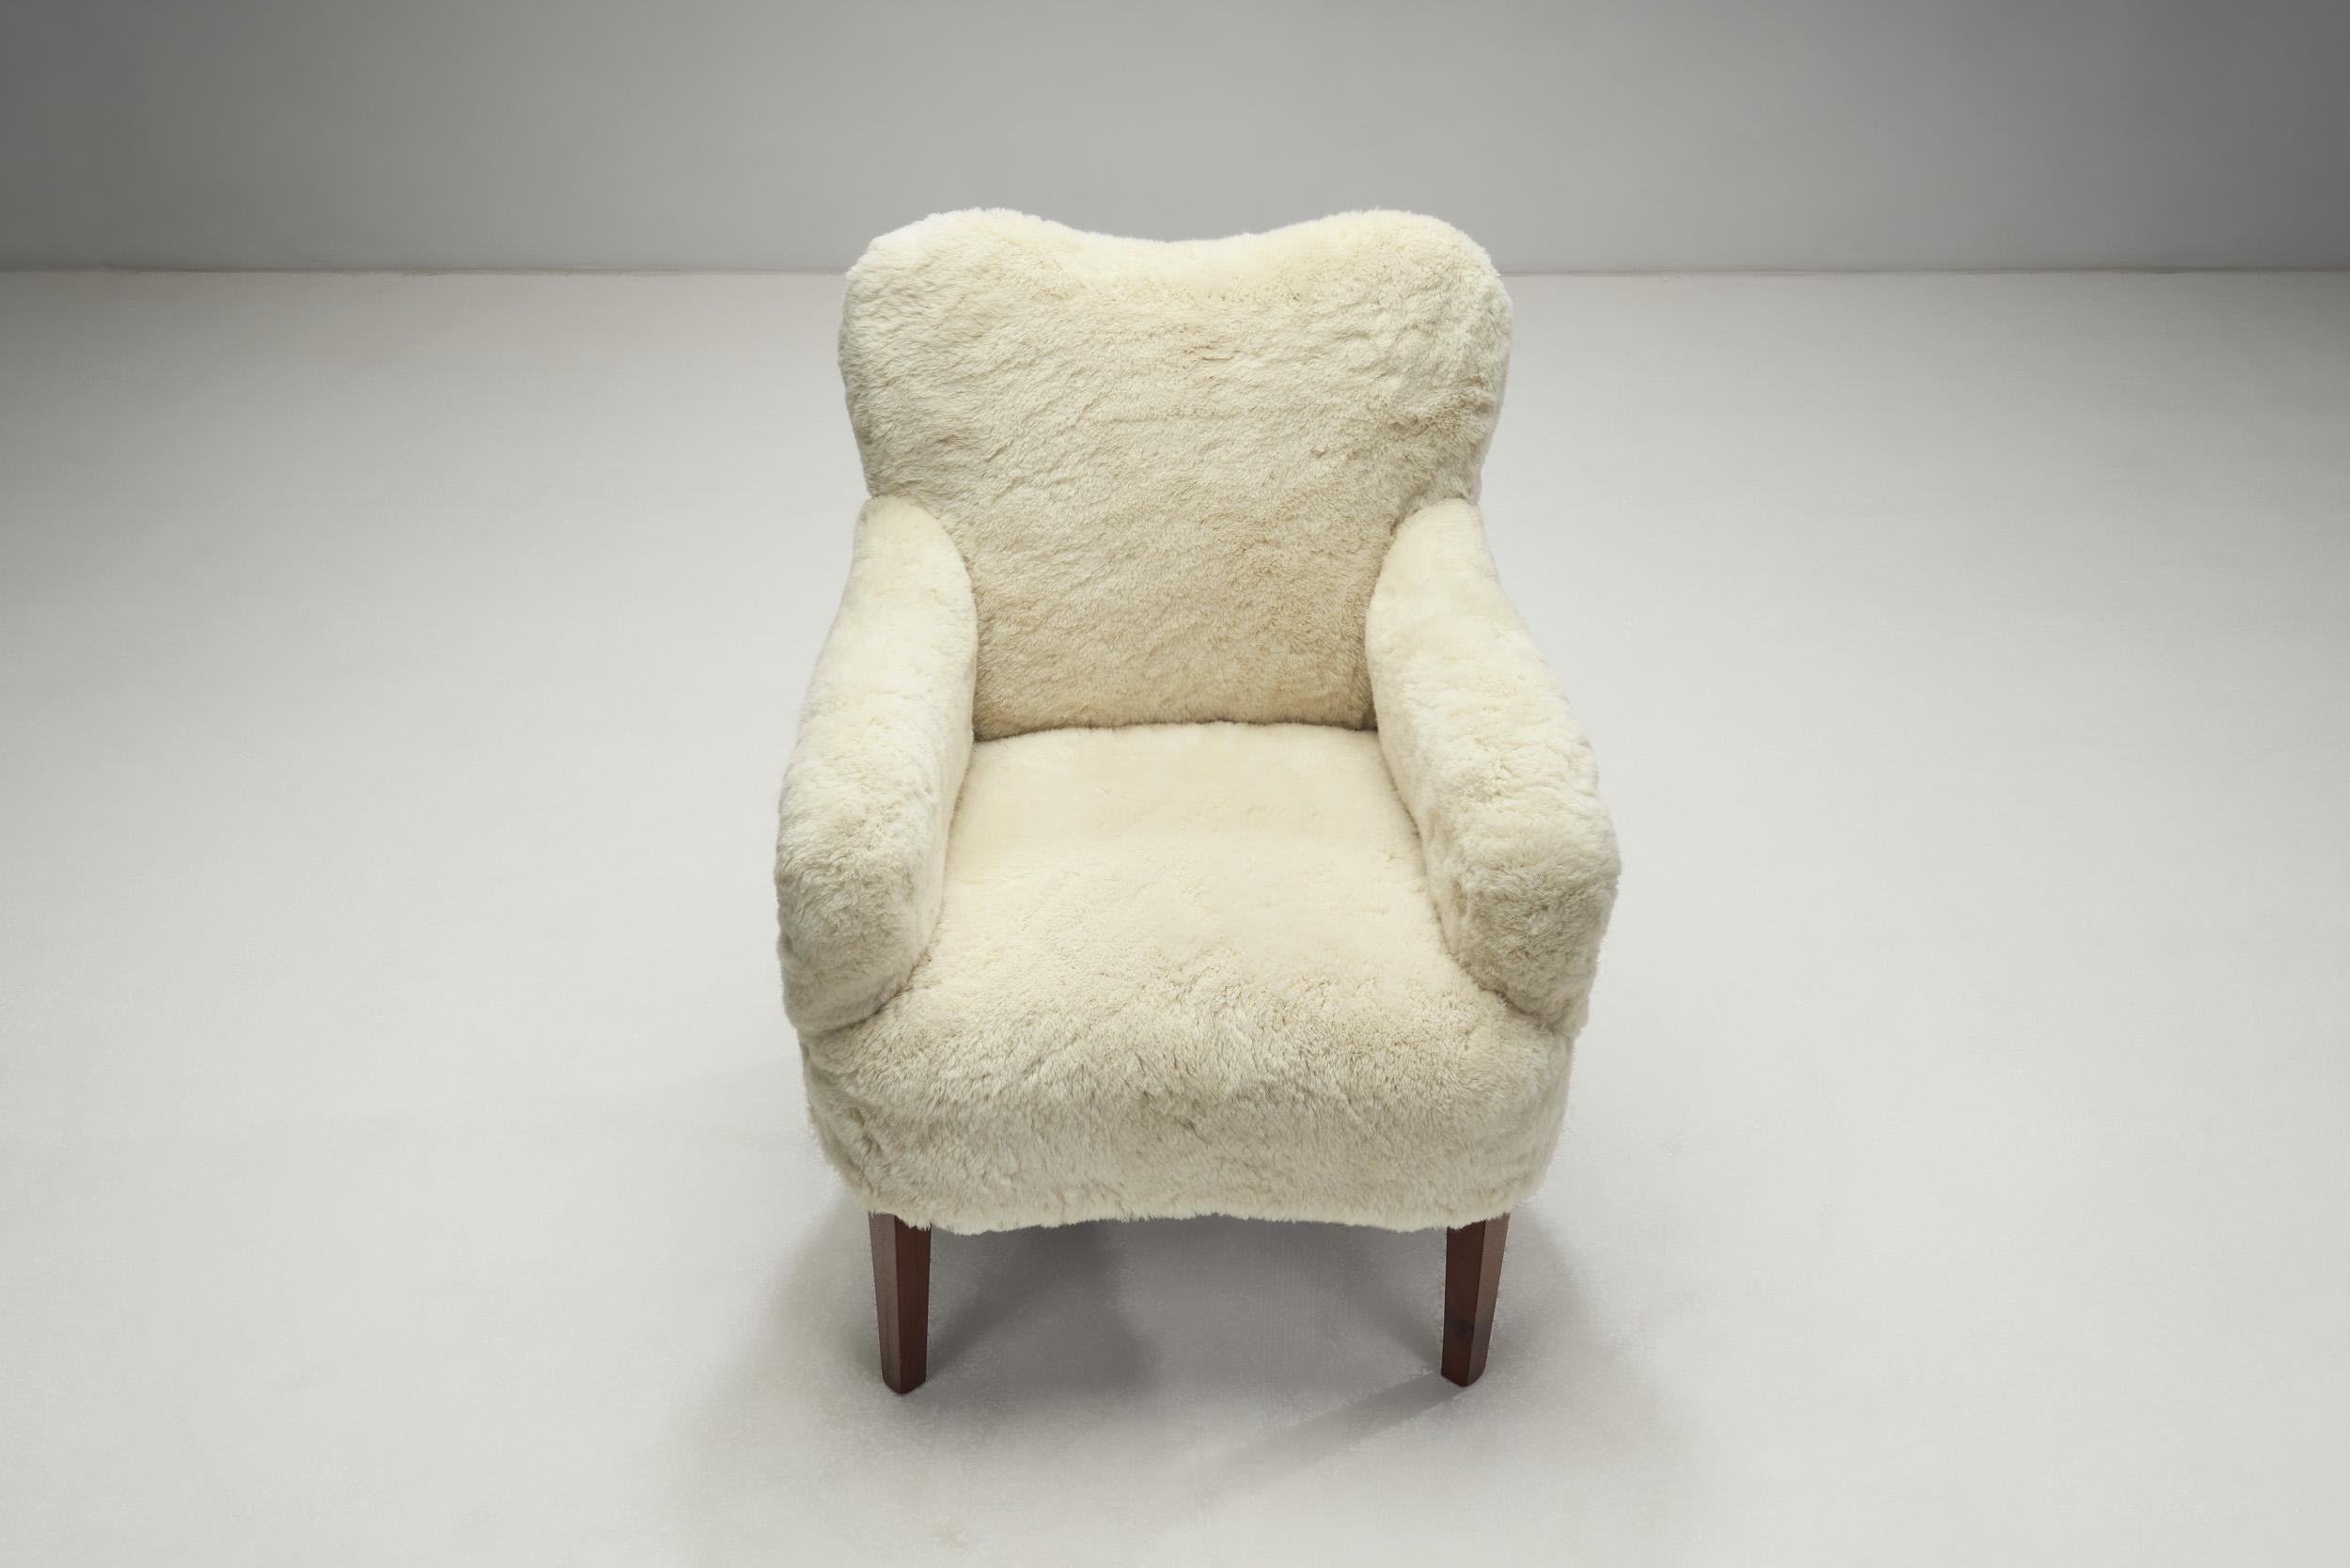 Sheepskin Danish Cabinetmaker Upholstered Easy Chairs, Denmark ca 1950s For Sale